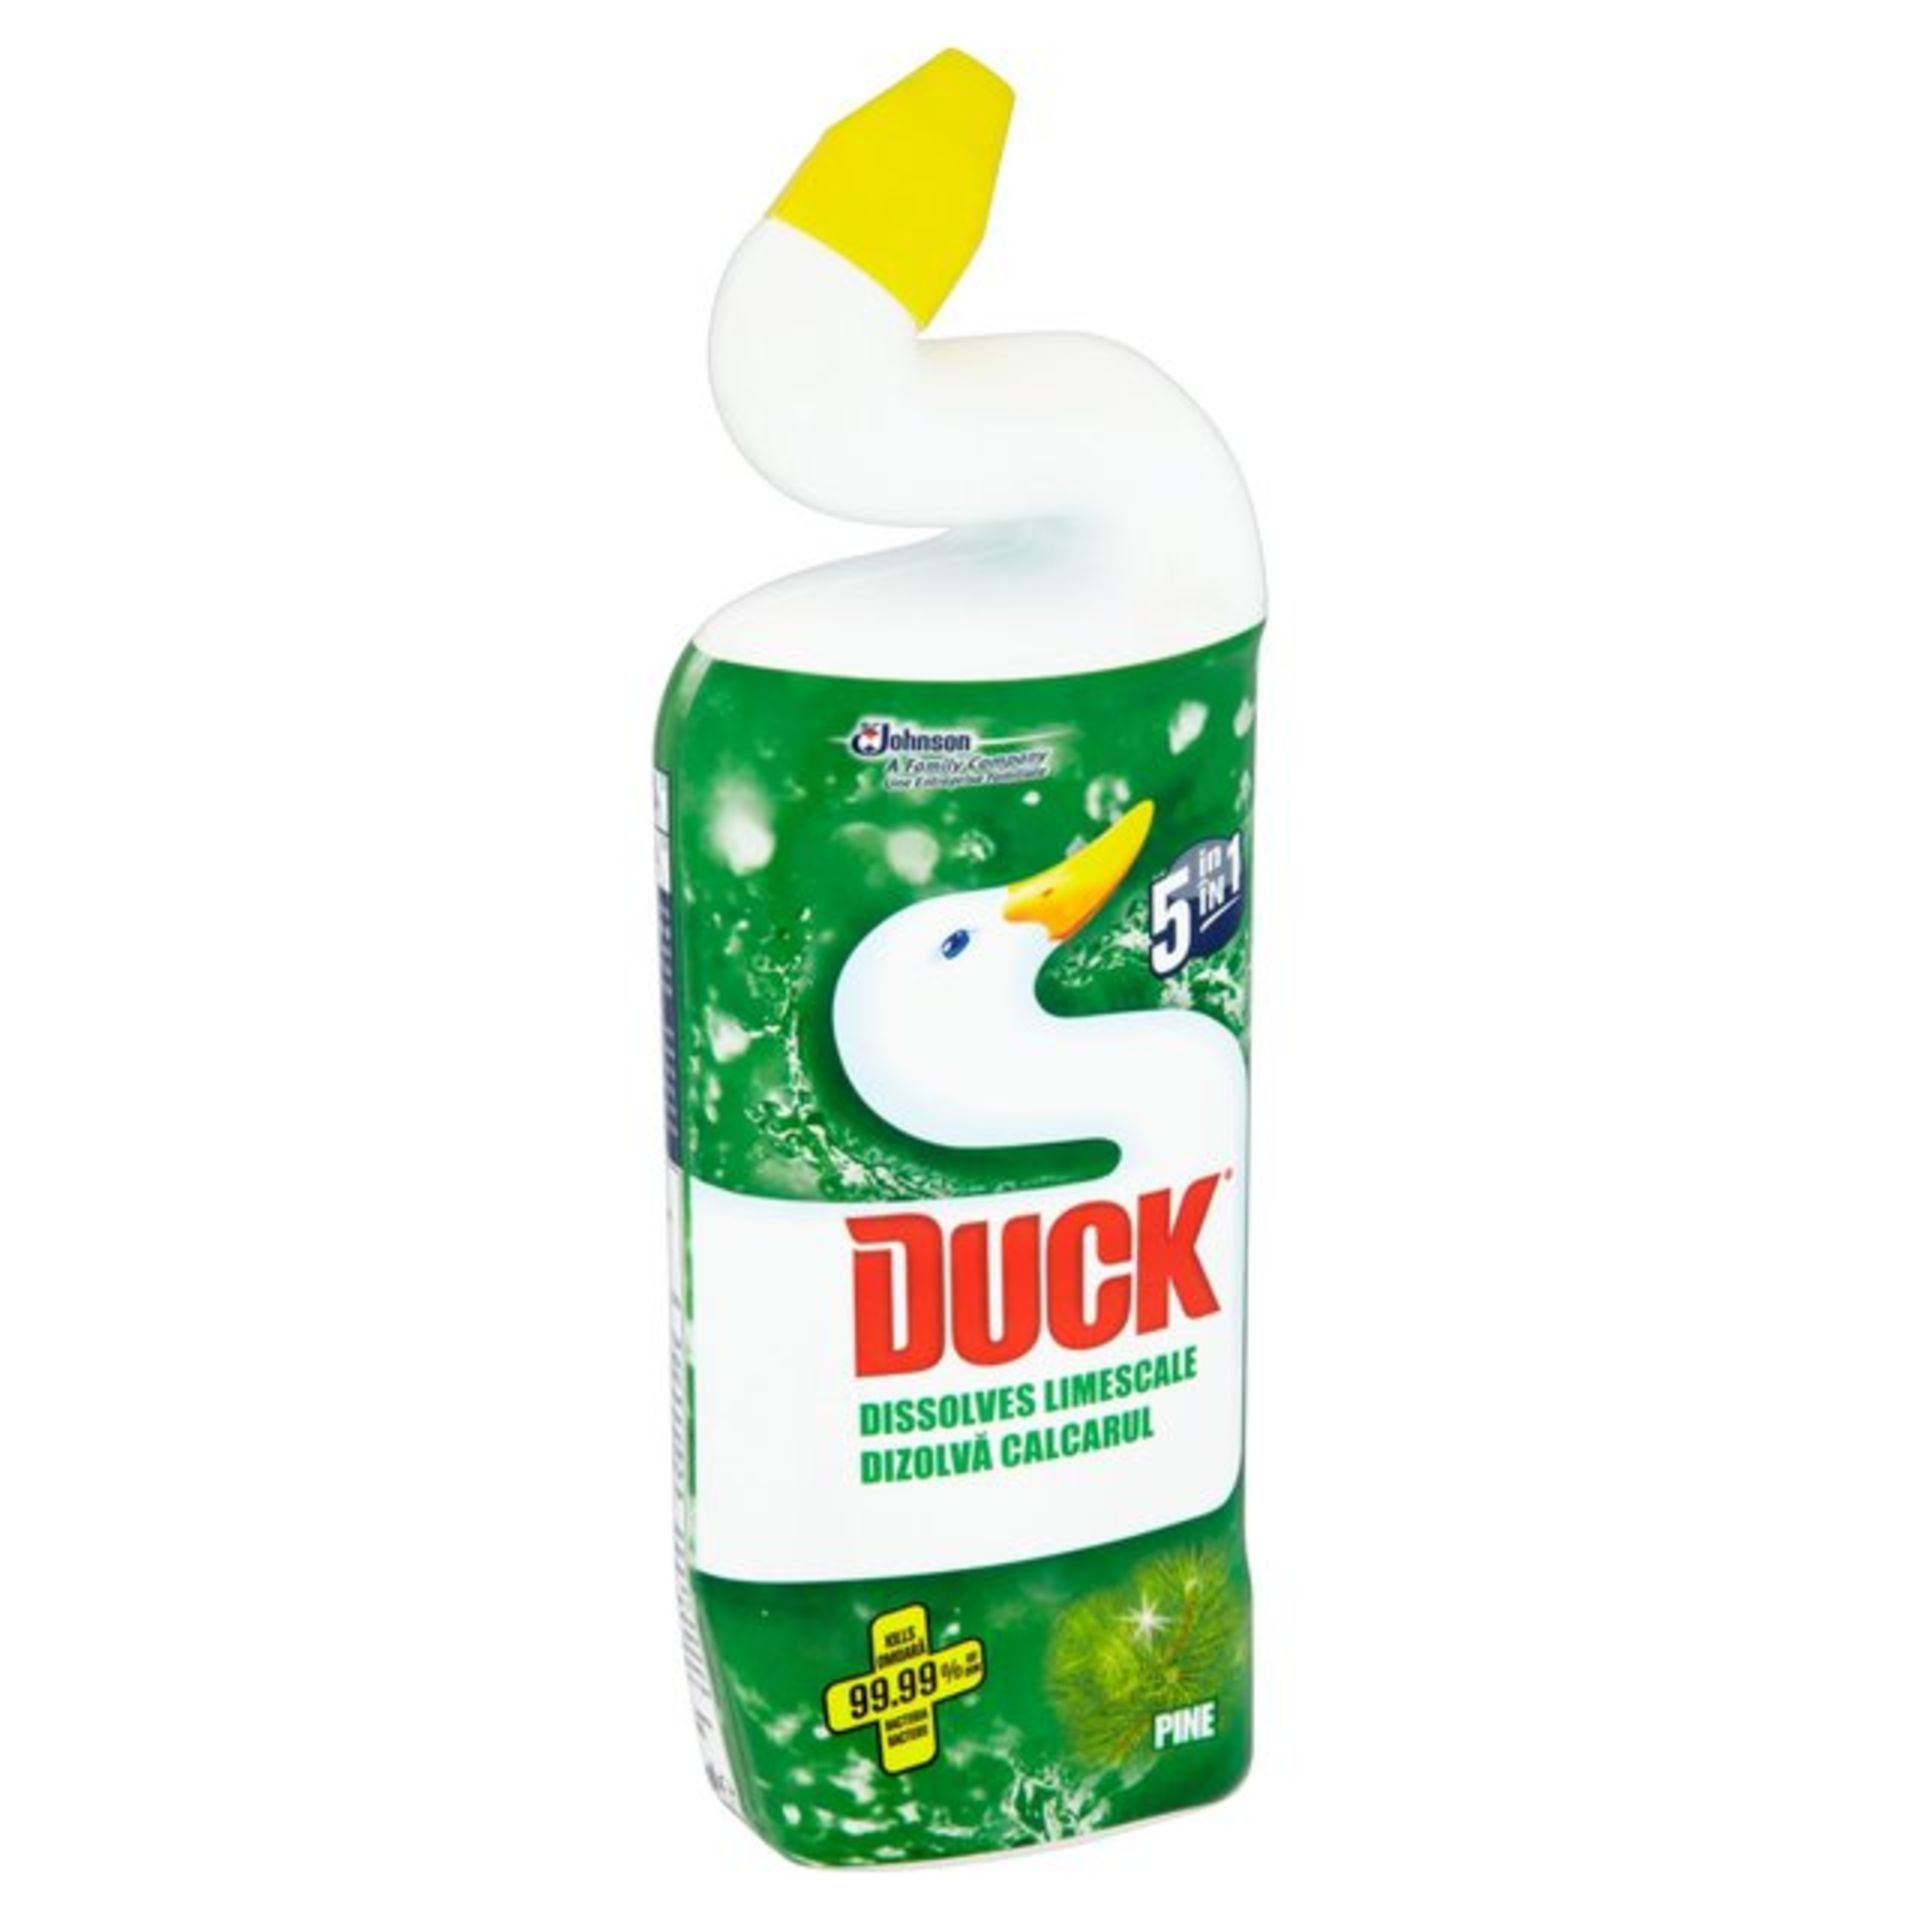 V Brand New Six Bottles Toilet Duck Liquid 750ml Pine Fresh 5 In 1 ISP £18.66 Viking Direct X 2 YOUR